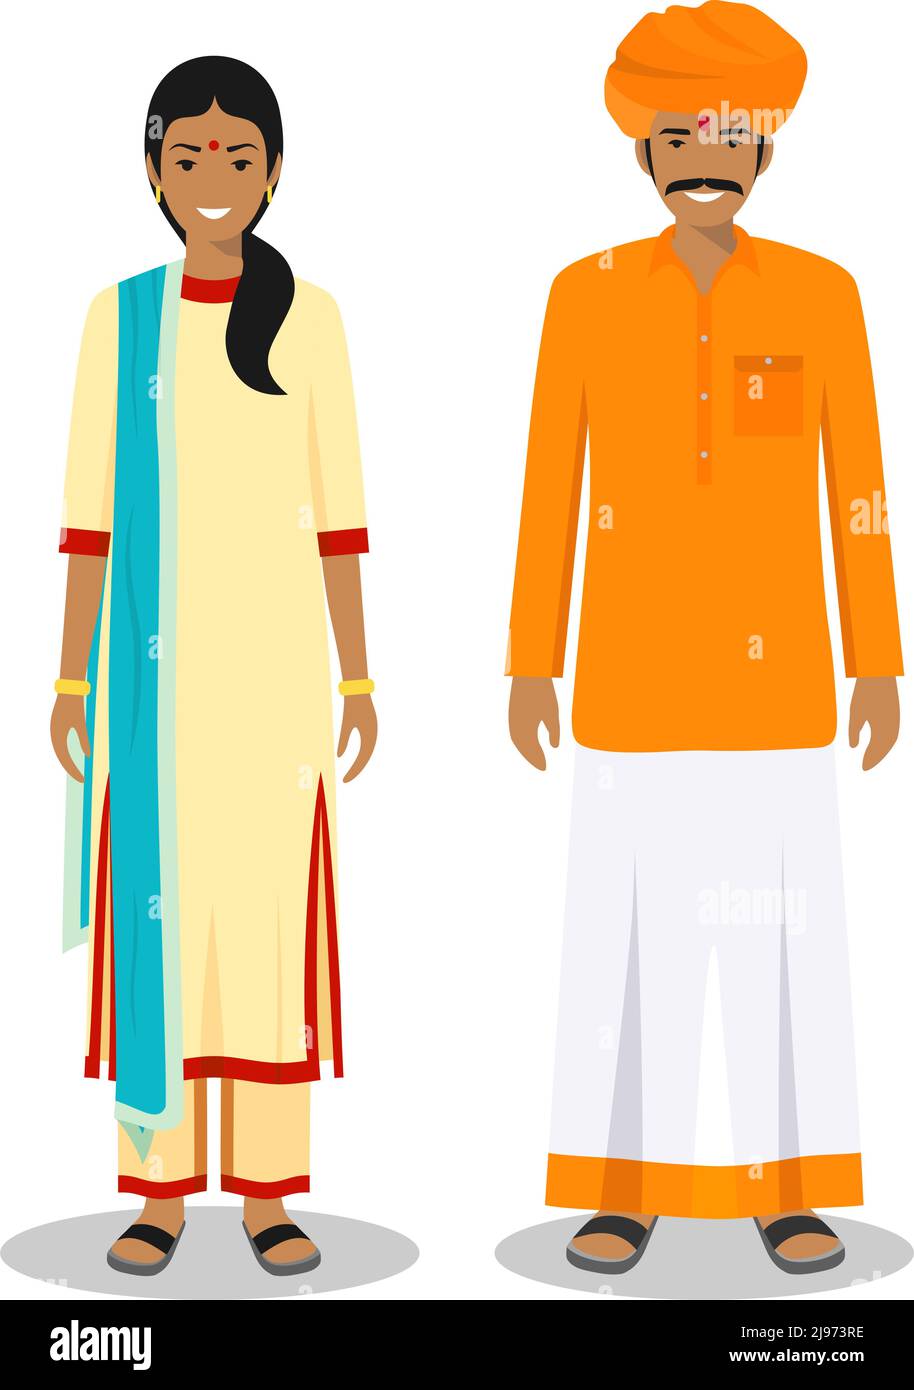 Detaillierte Darstellung von stehenden indianern in der traditionellen nationalen indischen Kleidung isoliert auf weißem Hintergrund in flachem Stil. Stock Vektor